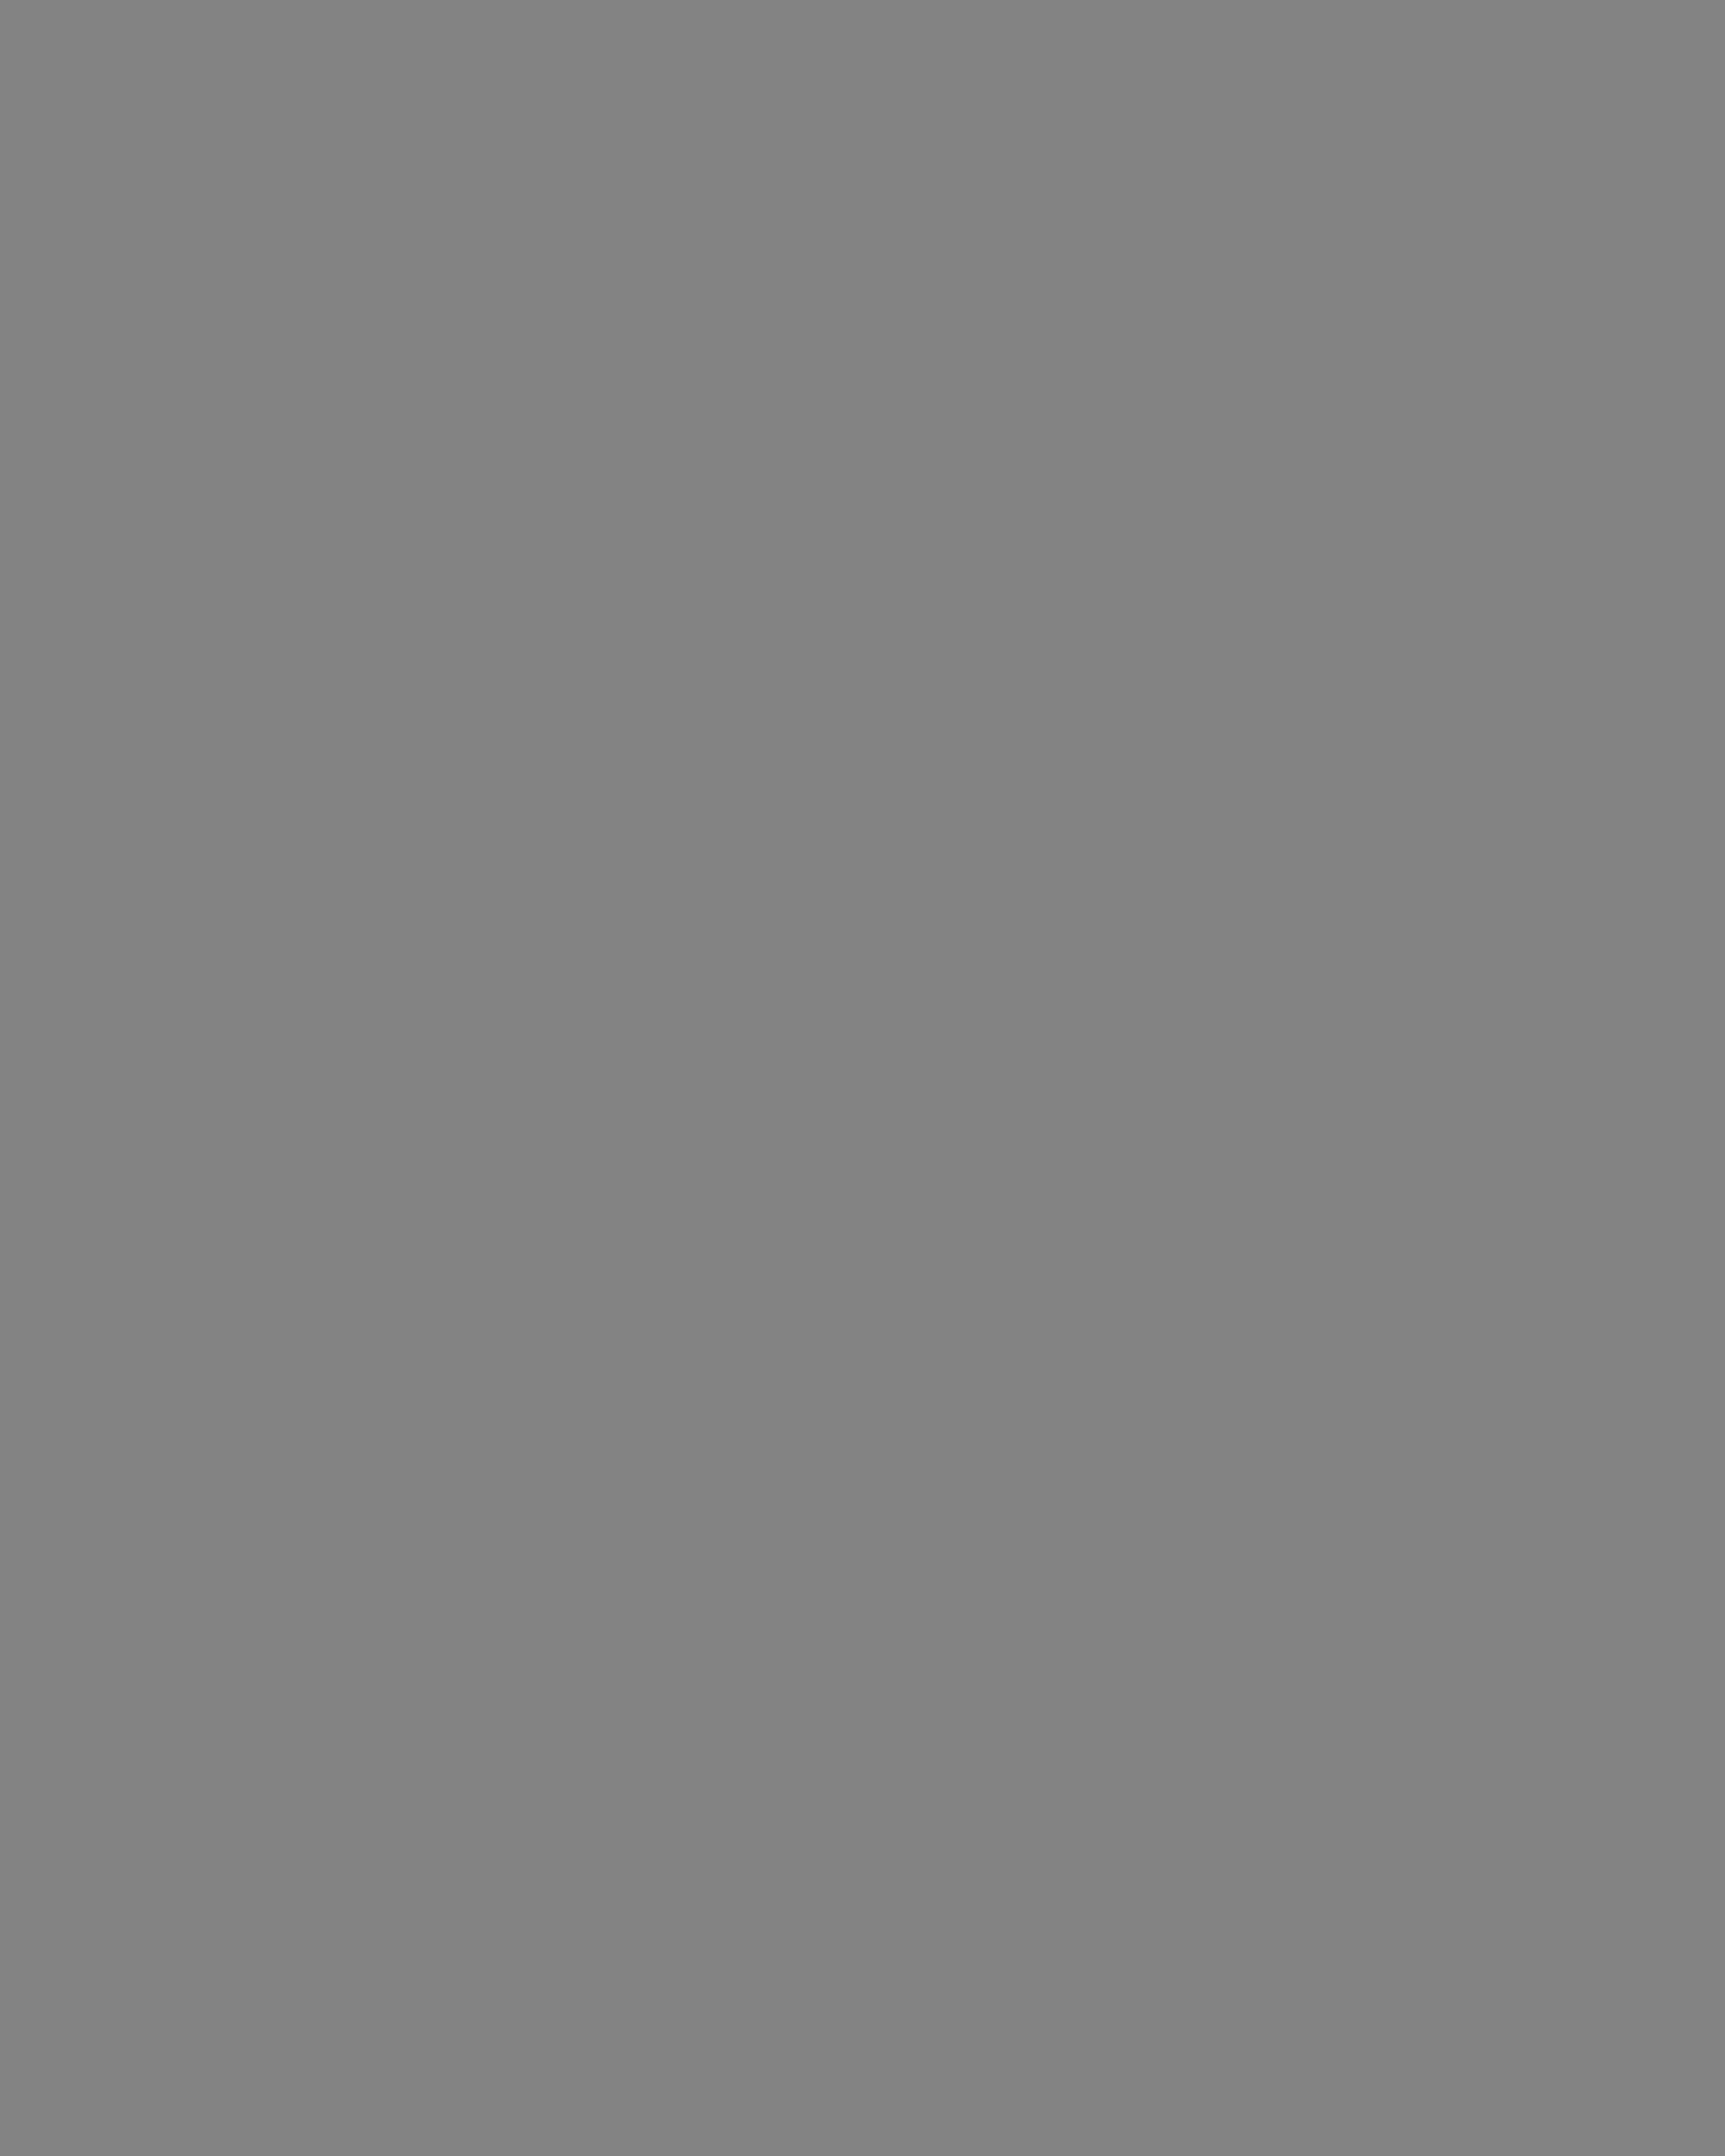 Съемки художественного фильма Сергея Бондарчука «Война и мир». Фотография: pastvu.com